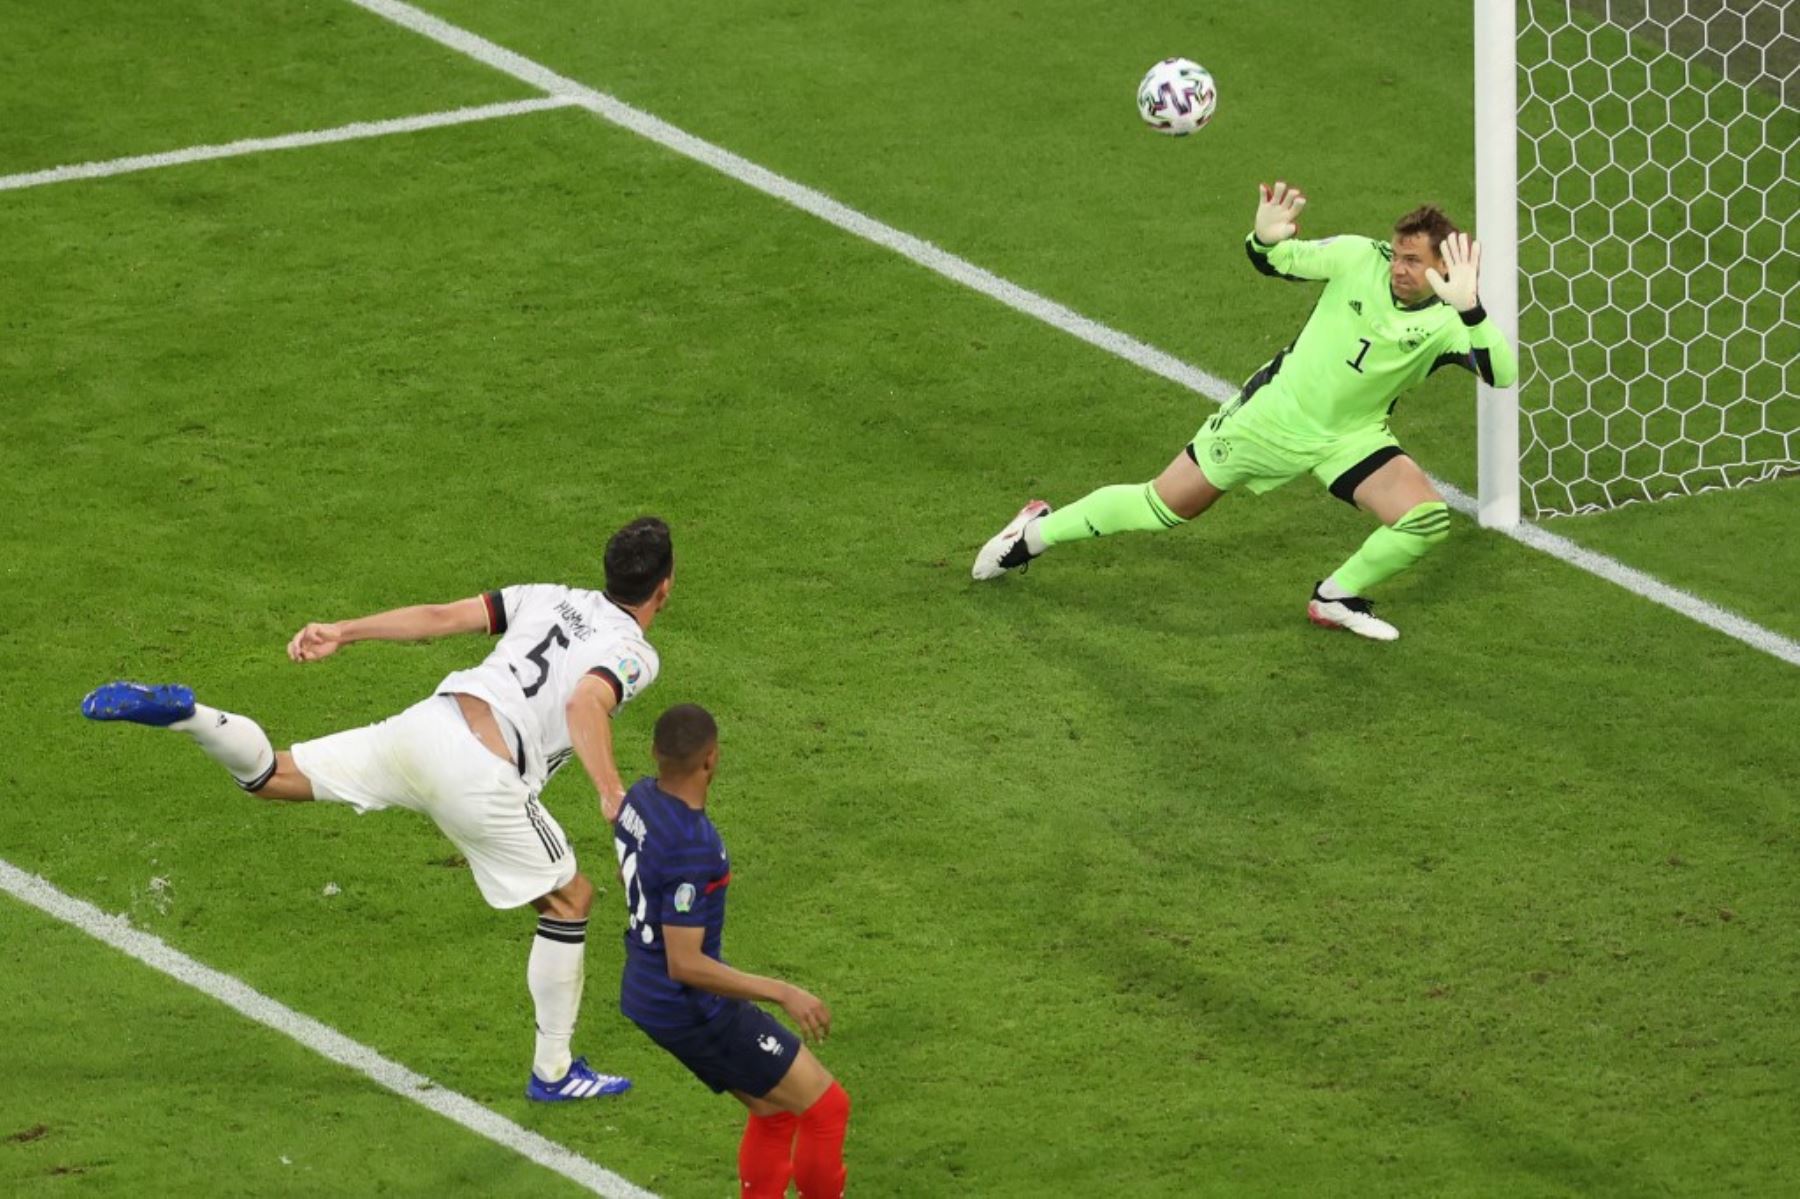 El defensor alemán Mats Hummels (L) desvía el balón más allá del portero alemán Manuel Neuer (R) para marcar un gol en propia meta durante el partido de fútbol del Grupo F de la UEFA EURO 2020 entre Francia y Alemania en el Allianz Arena en Múnich el 15 de junio de 2021. Foto: AFP